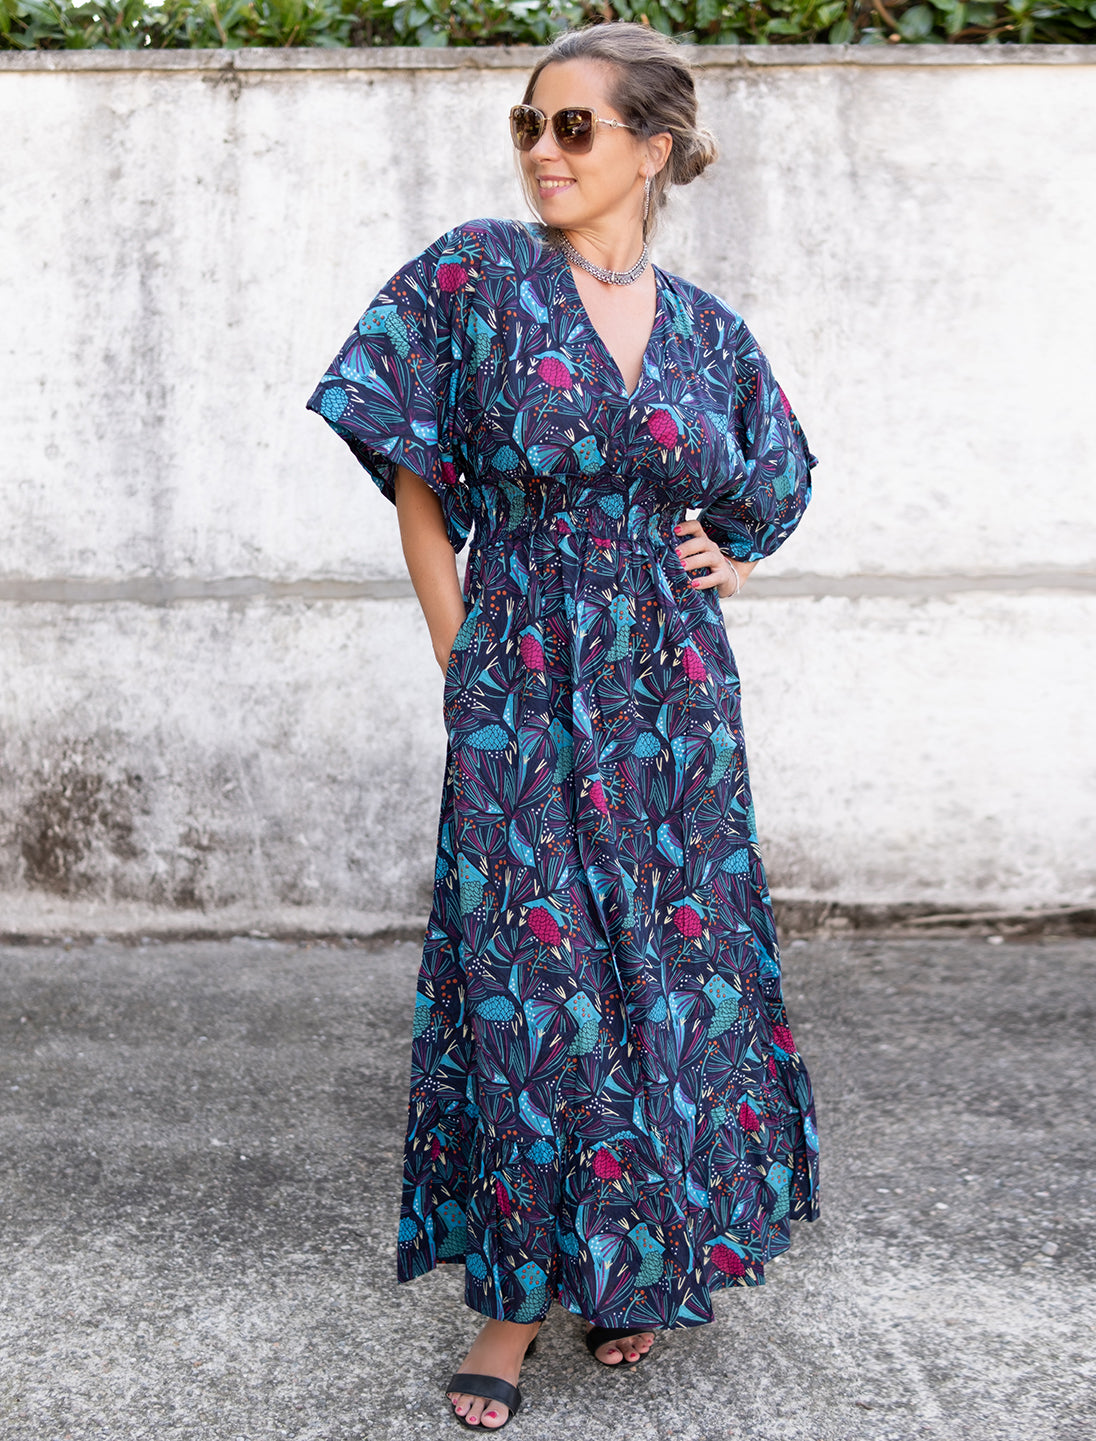 Vestito donna lungo Divya maniche a kimono - Bosco blu fucsia celeste Namastemood